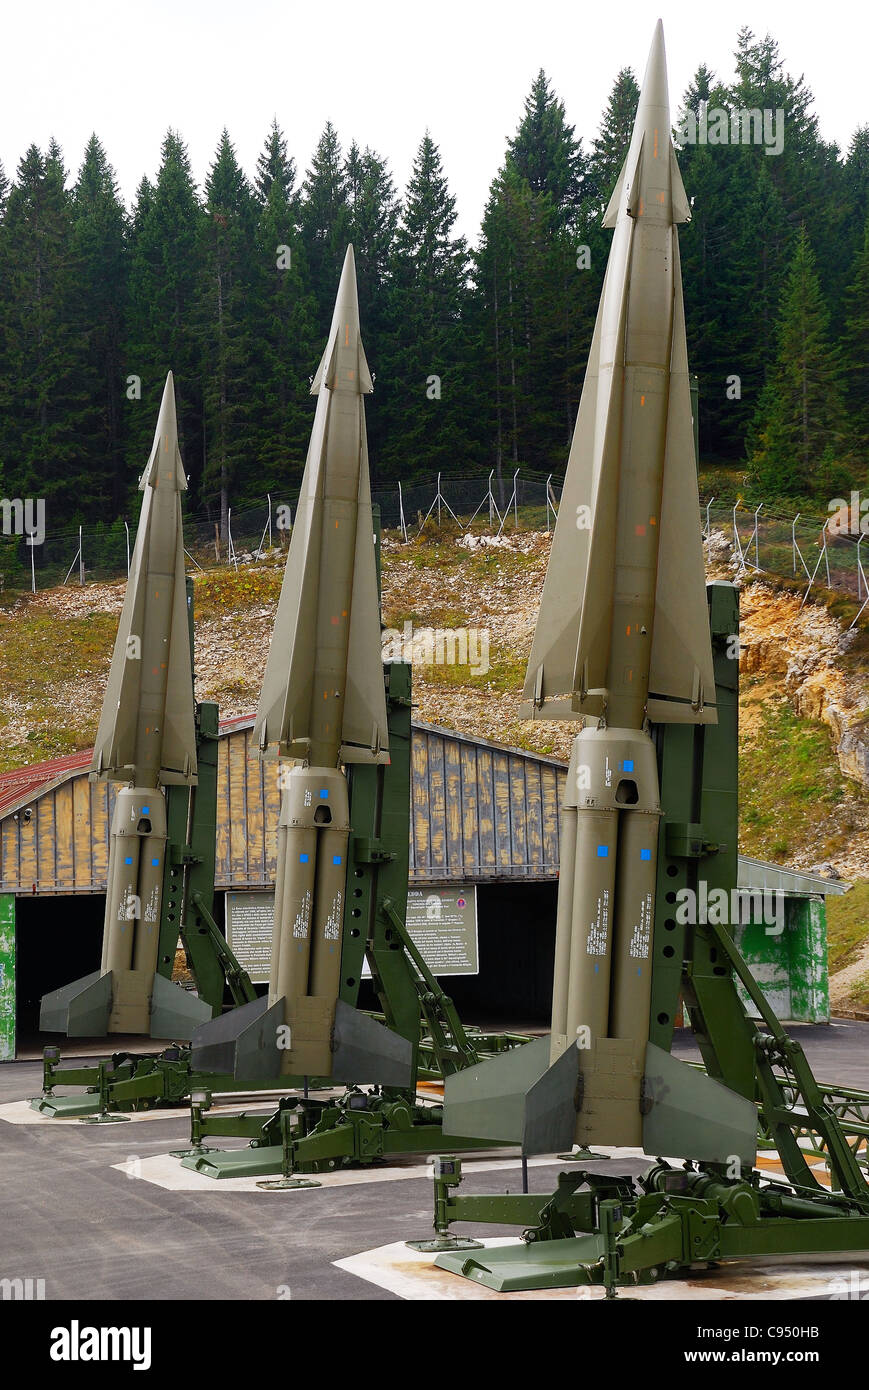 Puerto de Coe, Trentino, Italia. Guerra fría. Ex NATO BASE Tuono ( Thunder)  .Misiles Nike-Hercules en plataformas de lanzamiento Fotografía de stock -  Alamy